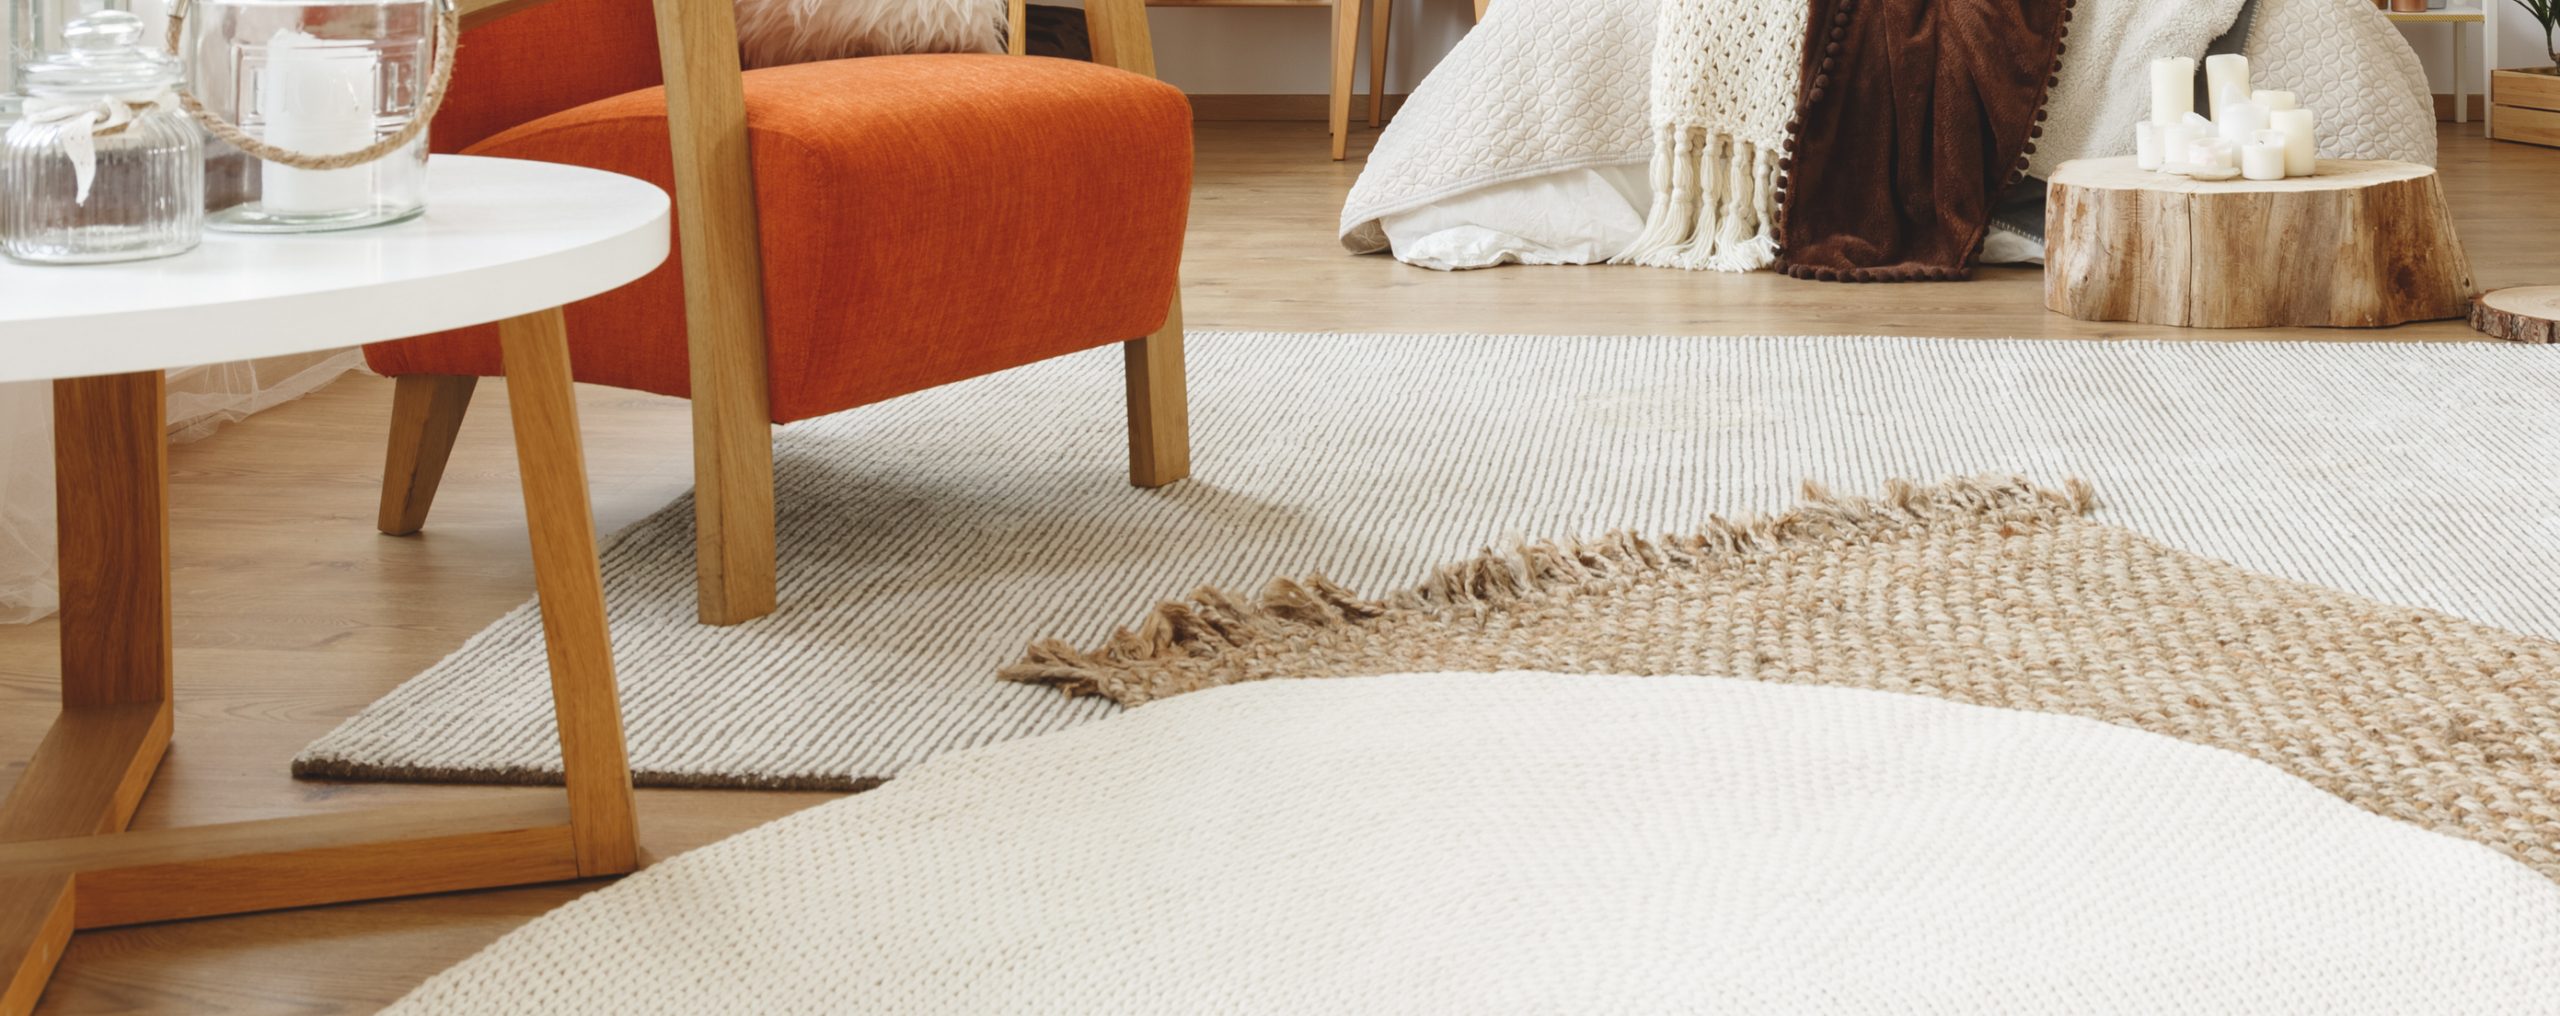 Best Rugs For Hardwood Floors, Best Carpet Pads For Area Rugs On Hardwood Floors